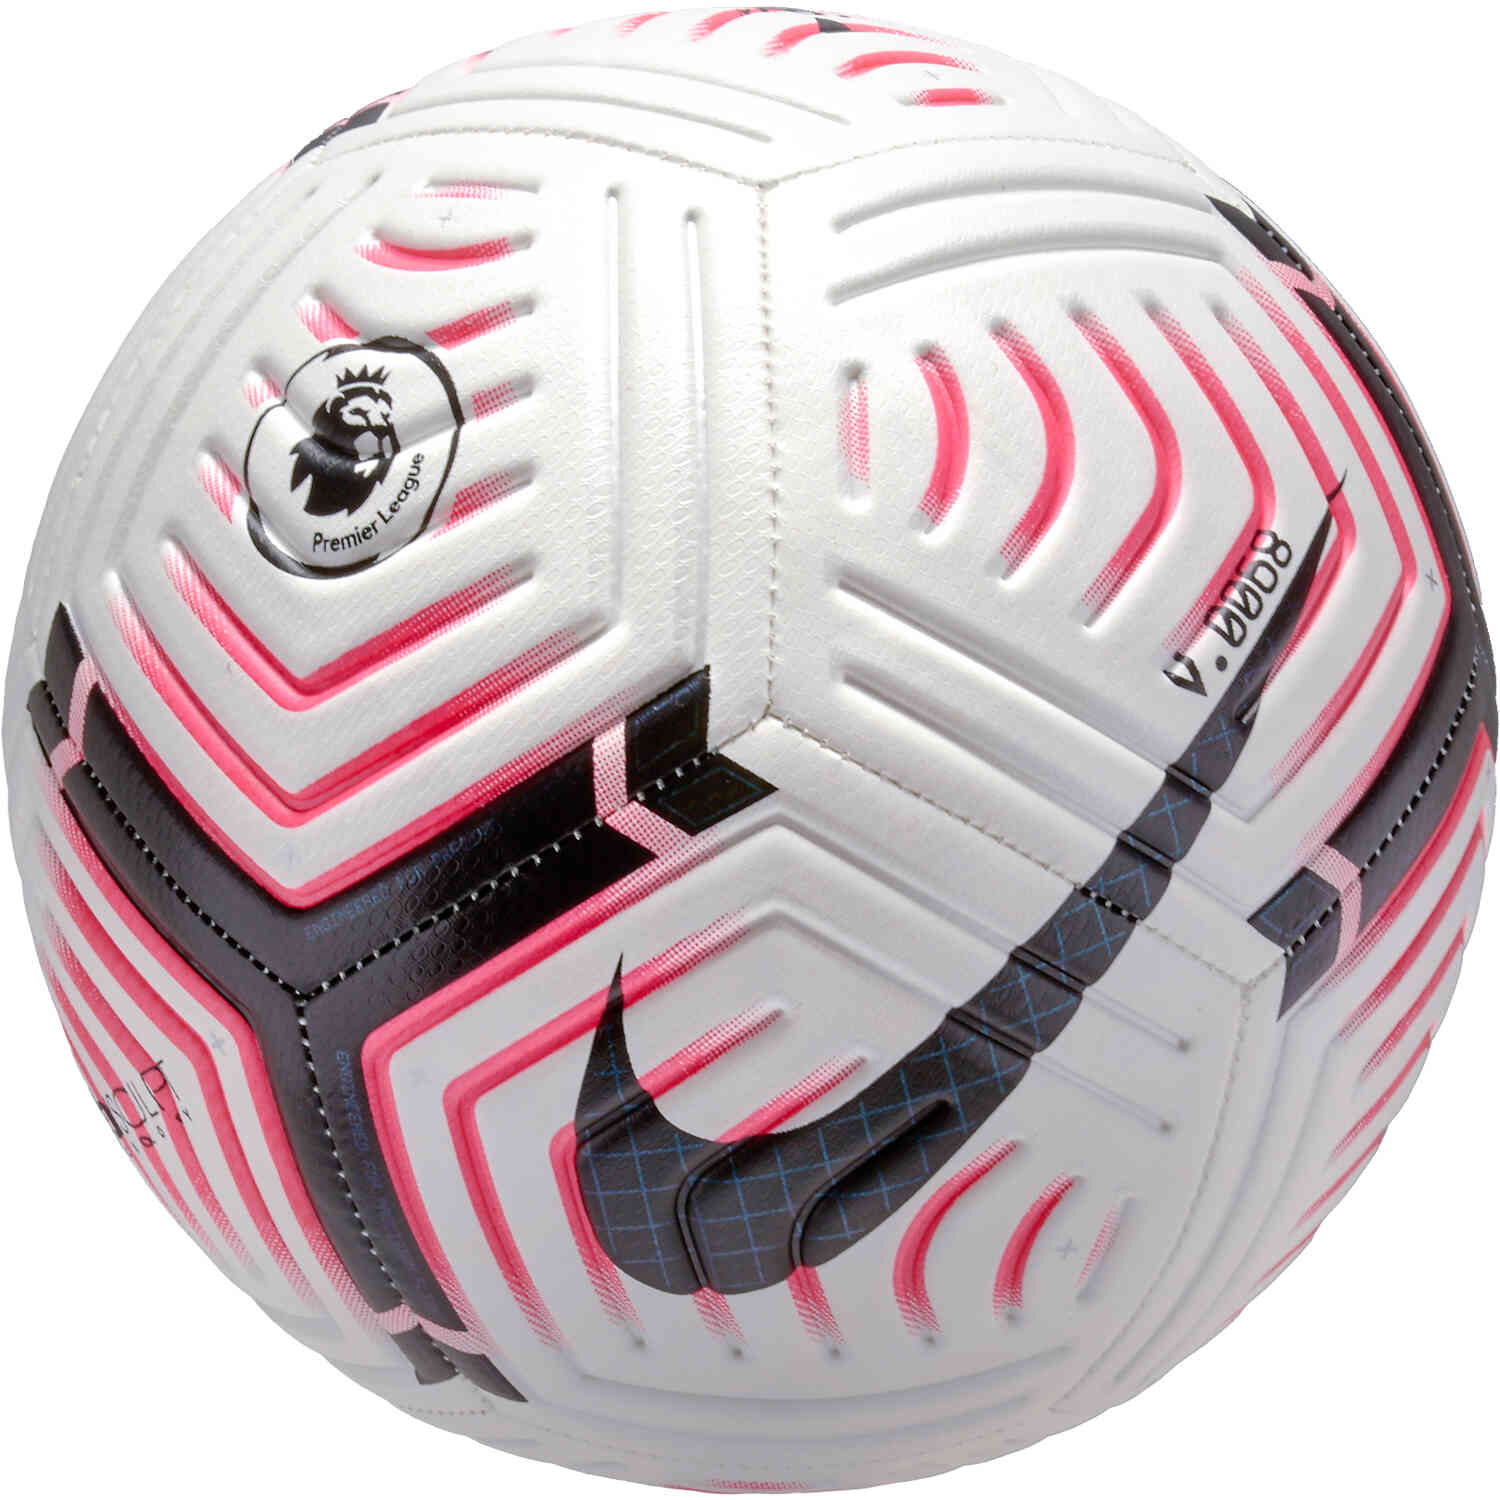 Nike Premier League Strike Soccer Ball - White & Laser ...